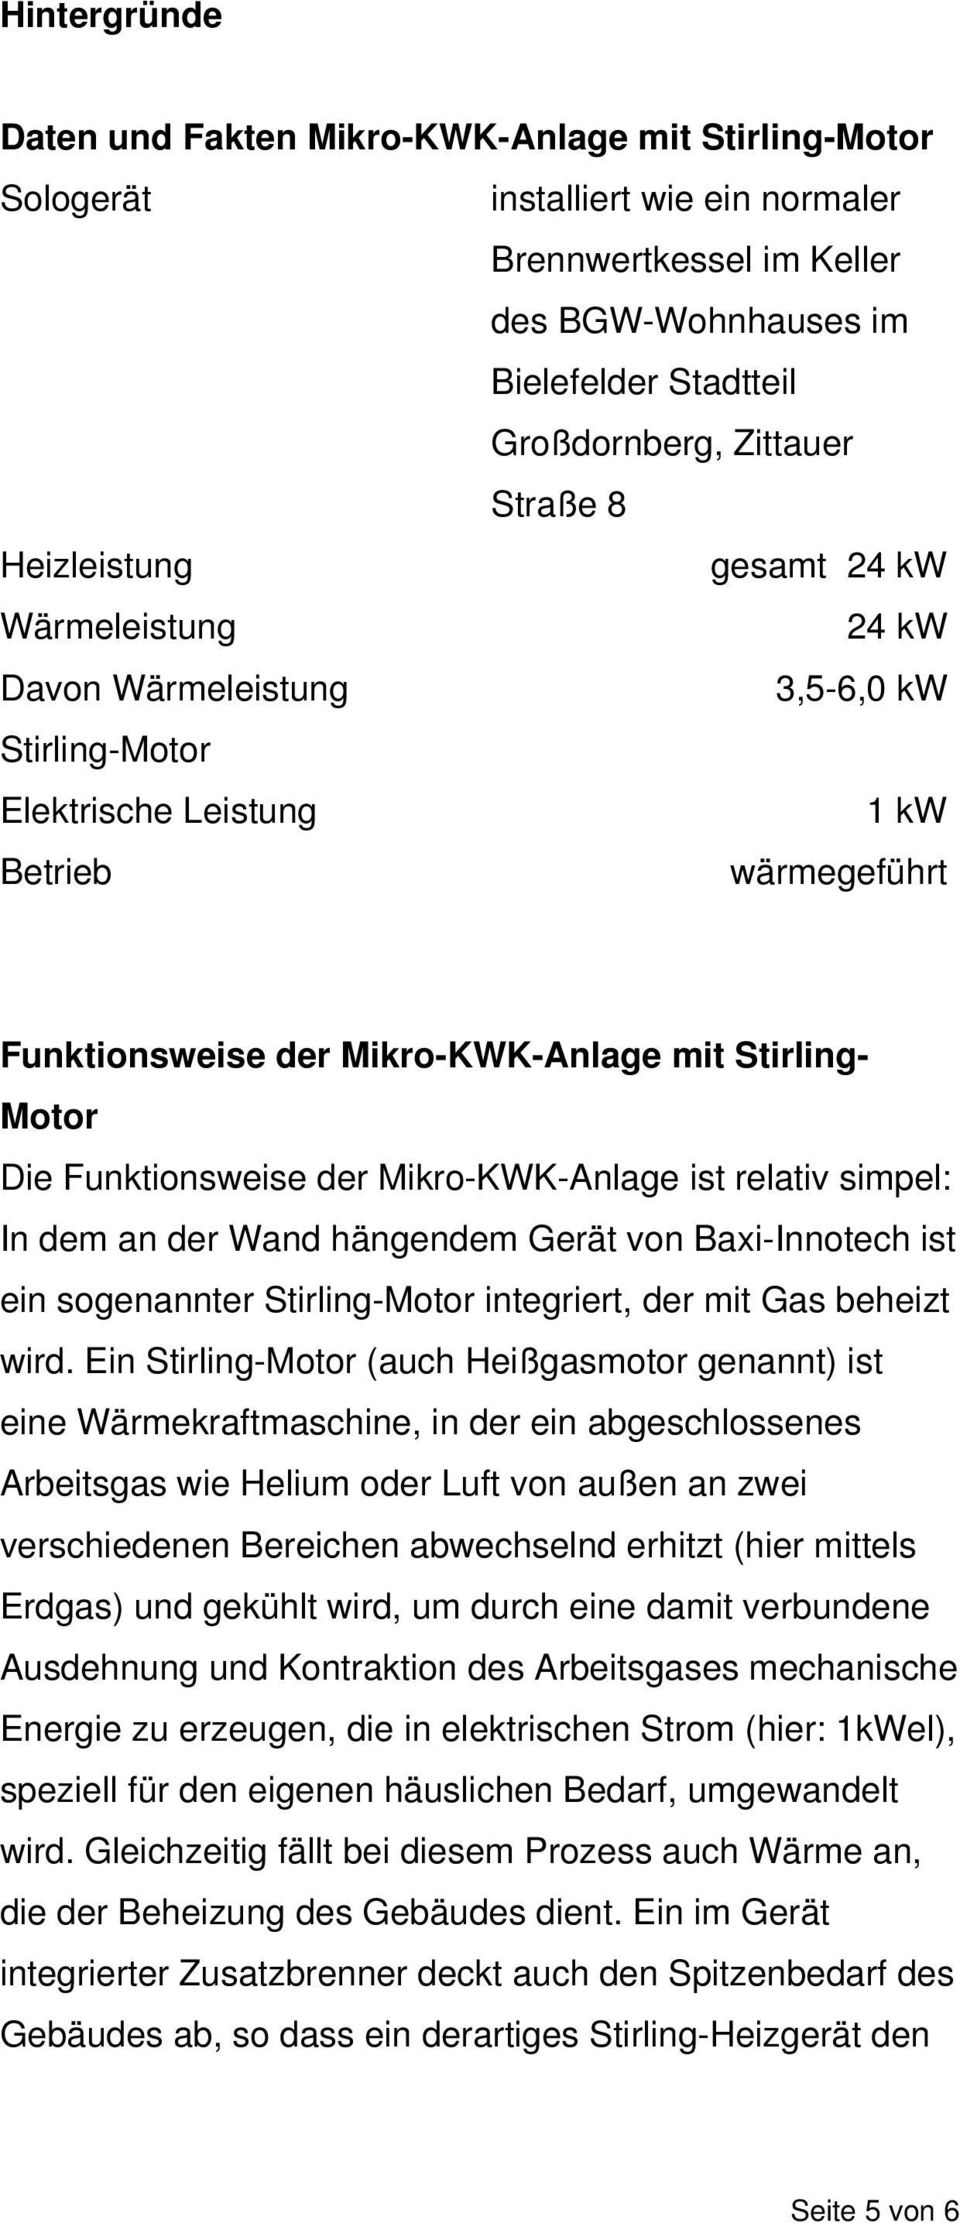 Motor Die Funktionsweise der Mikro-KWK-Anlage ist relativ simpel: In dem an der Wand hängendem Gerät von Baxi-Innotech ist ein sogenannter Stirling-Motor integriert, der mit Gas beheizt wird.